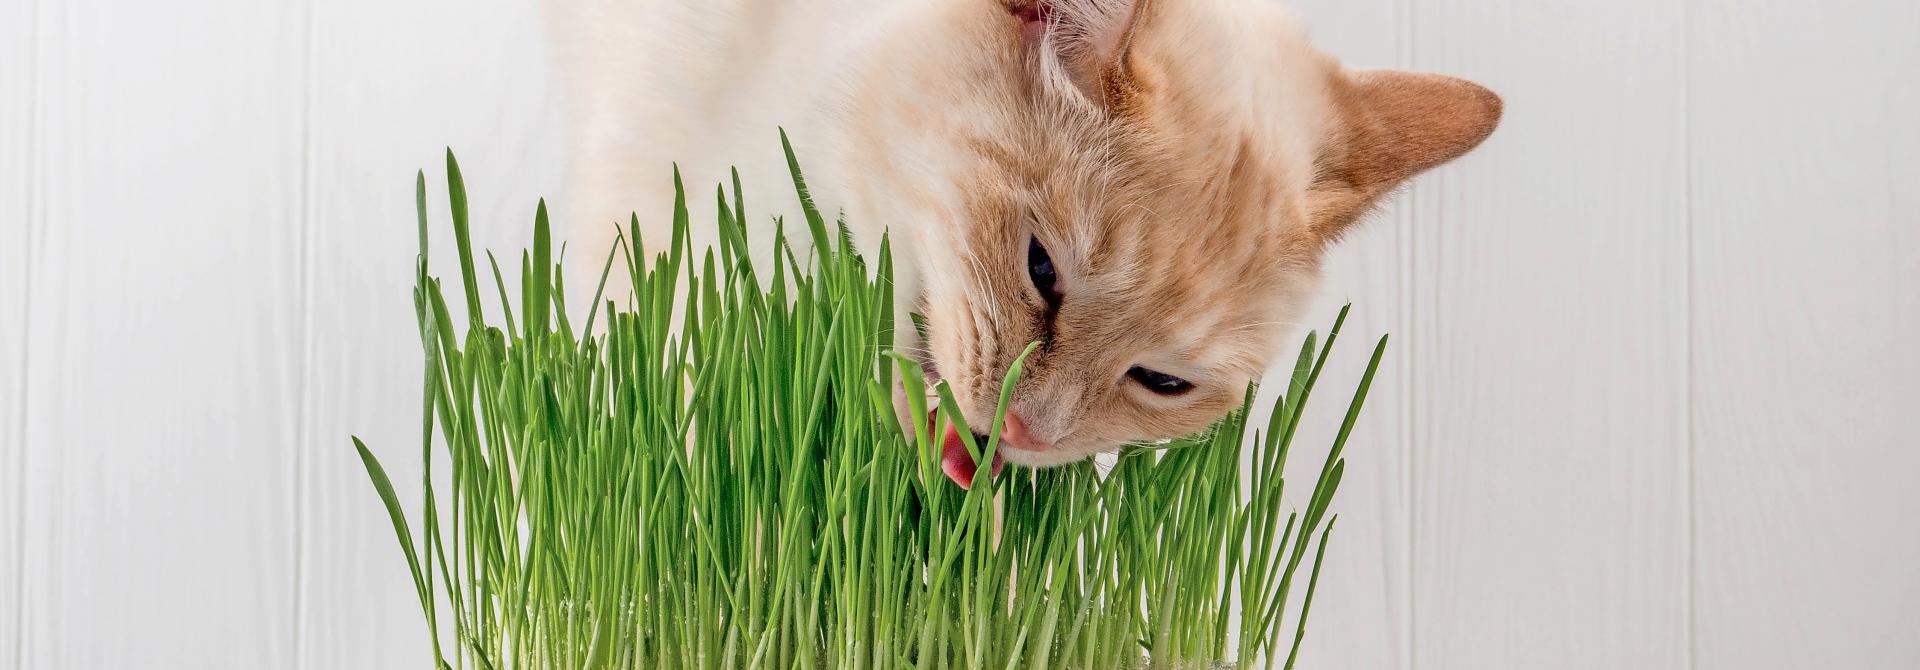 Sperlis Rote Gans das bessere Katzengras Tiere lieben es Erdbeerspinat 